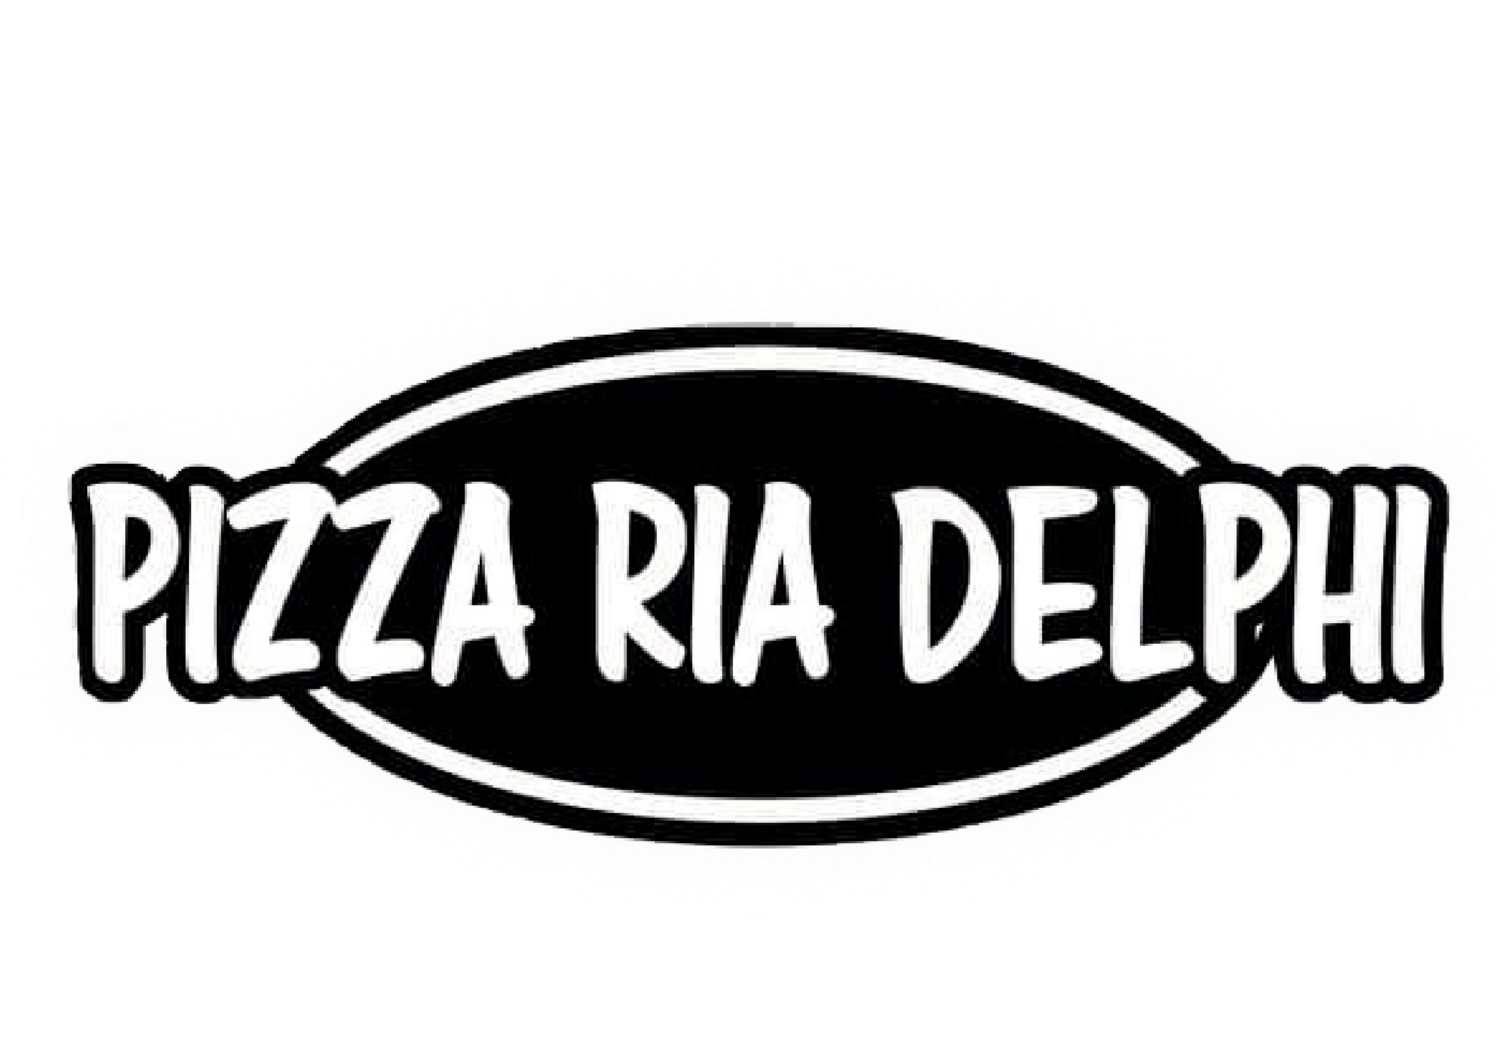 Pizza Ria Delphi